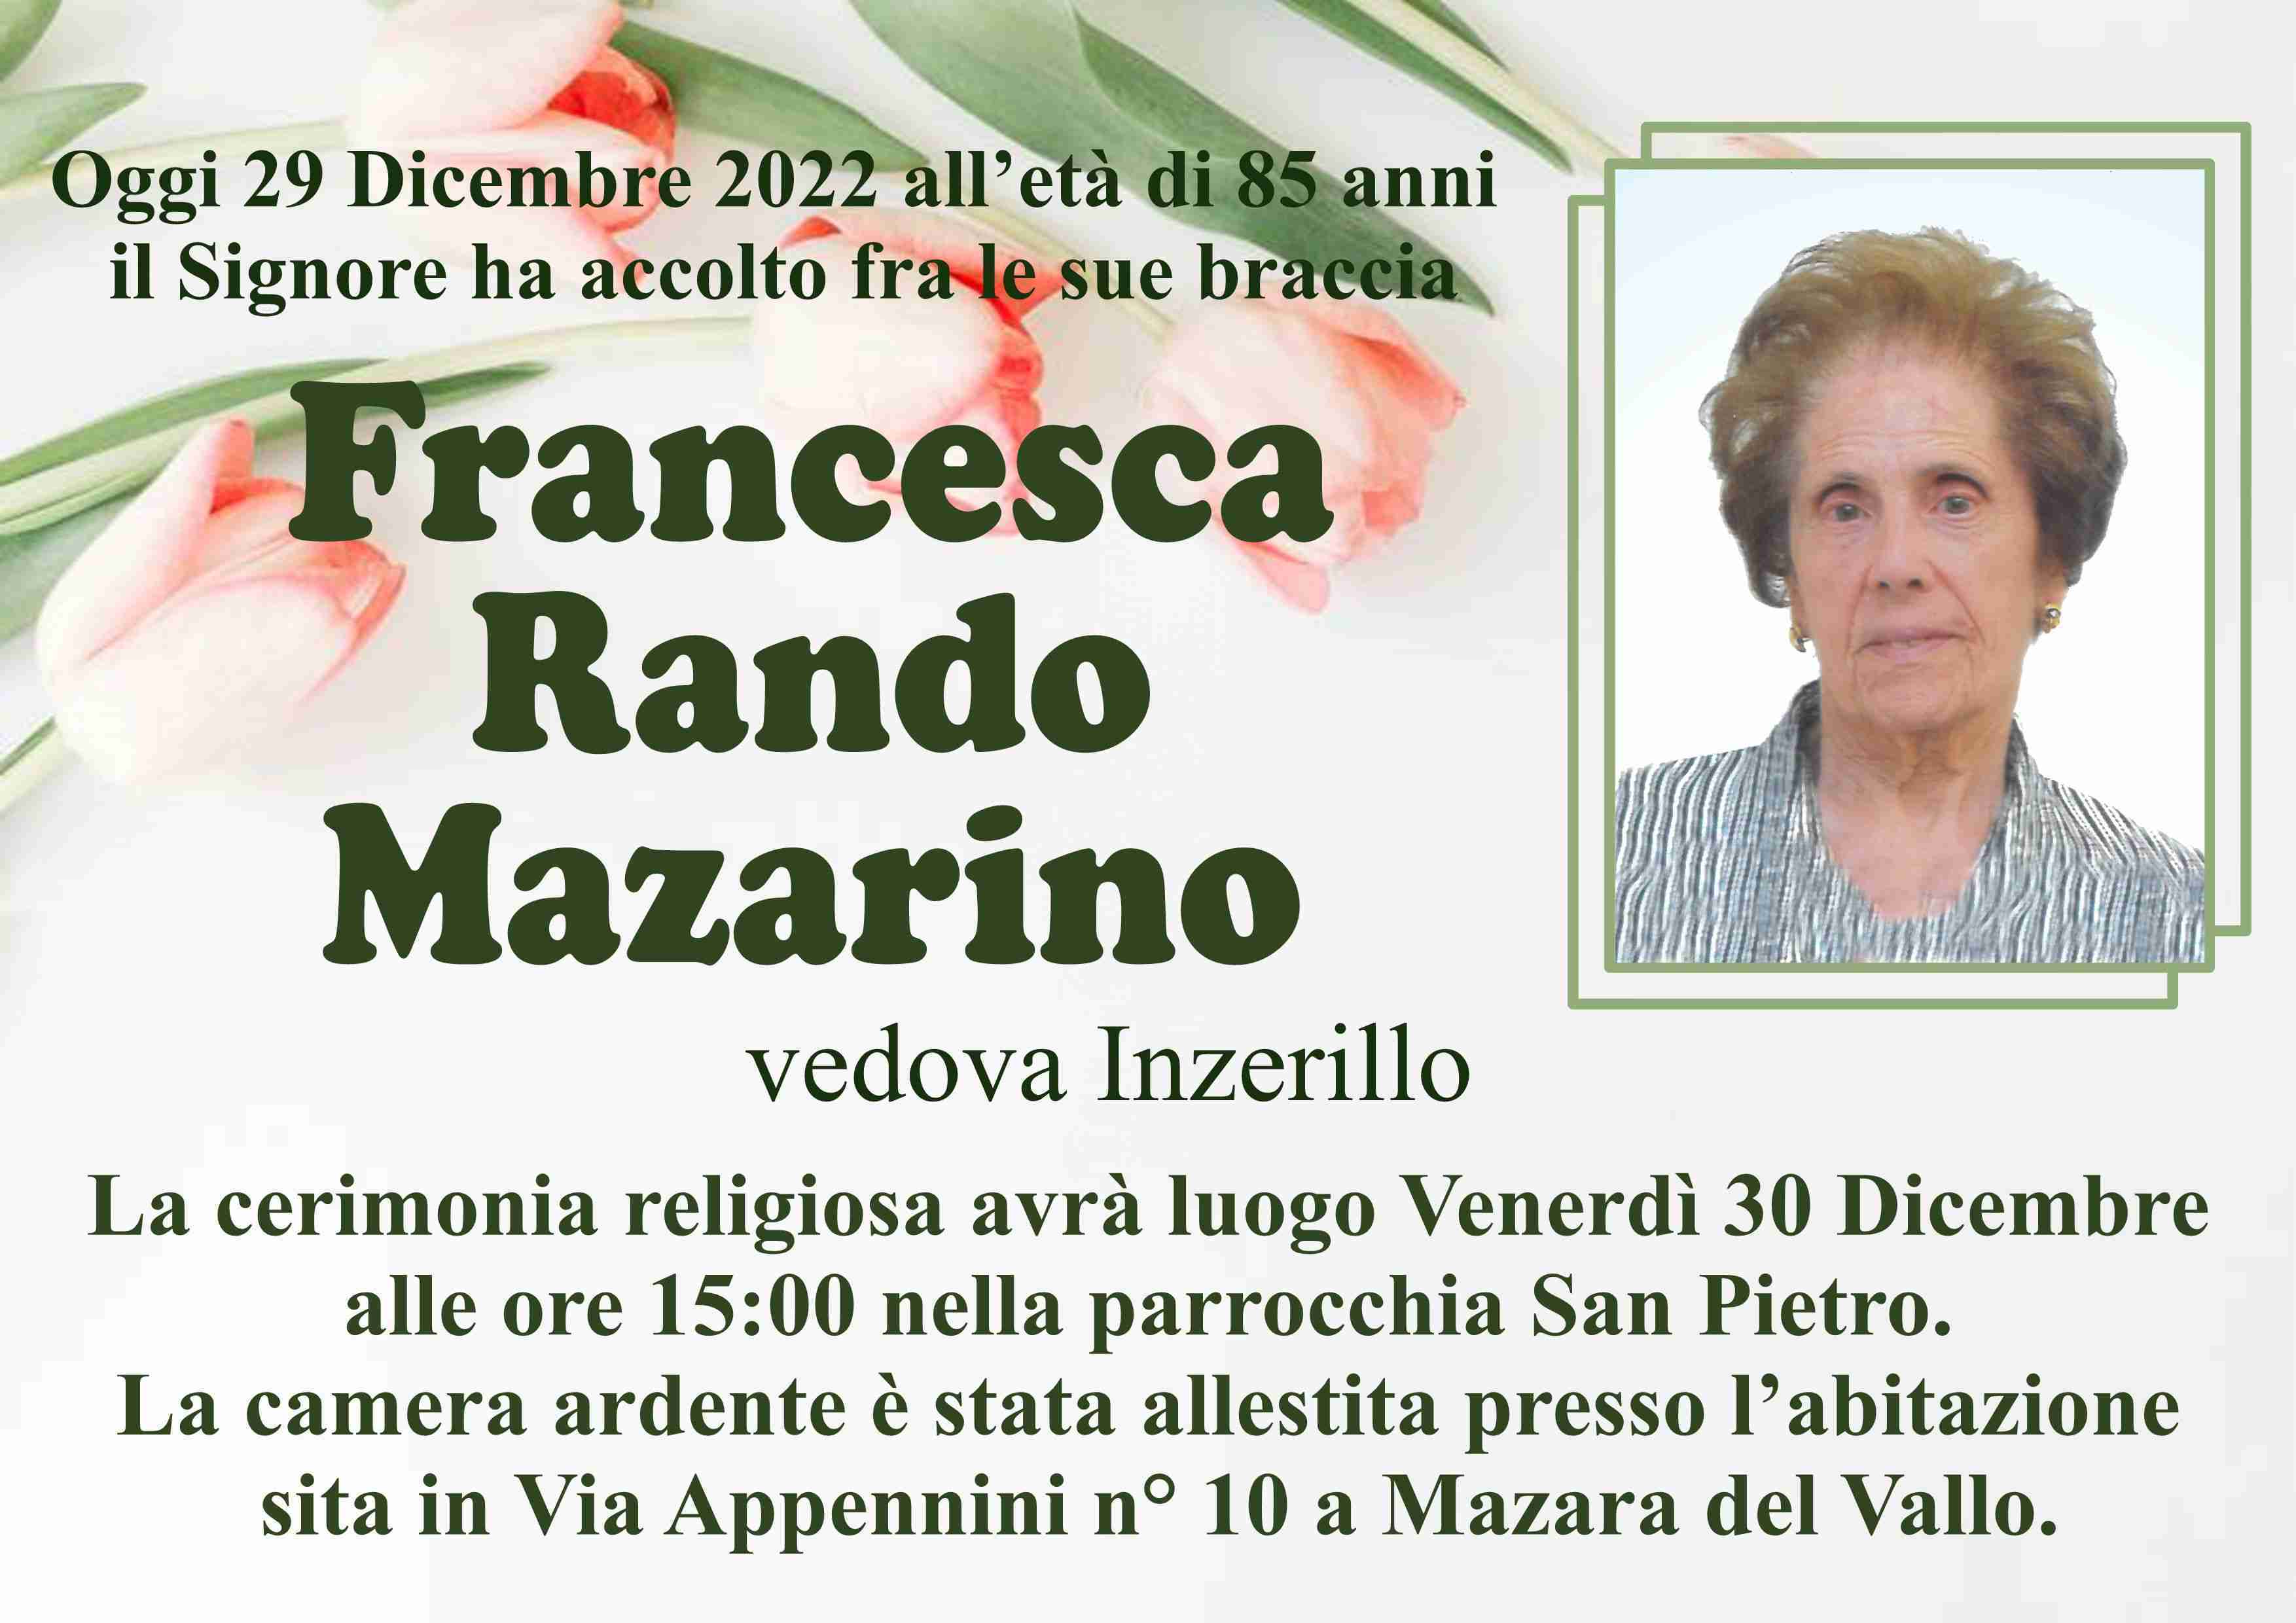 Francesca Rando Mazarino